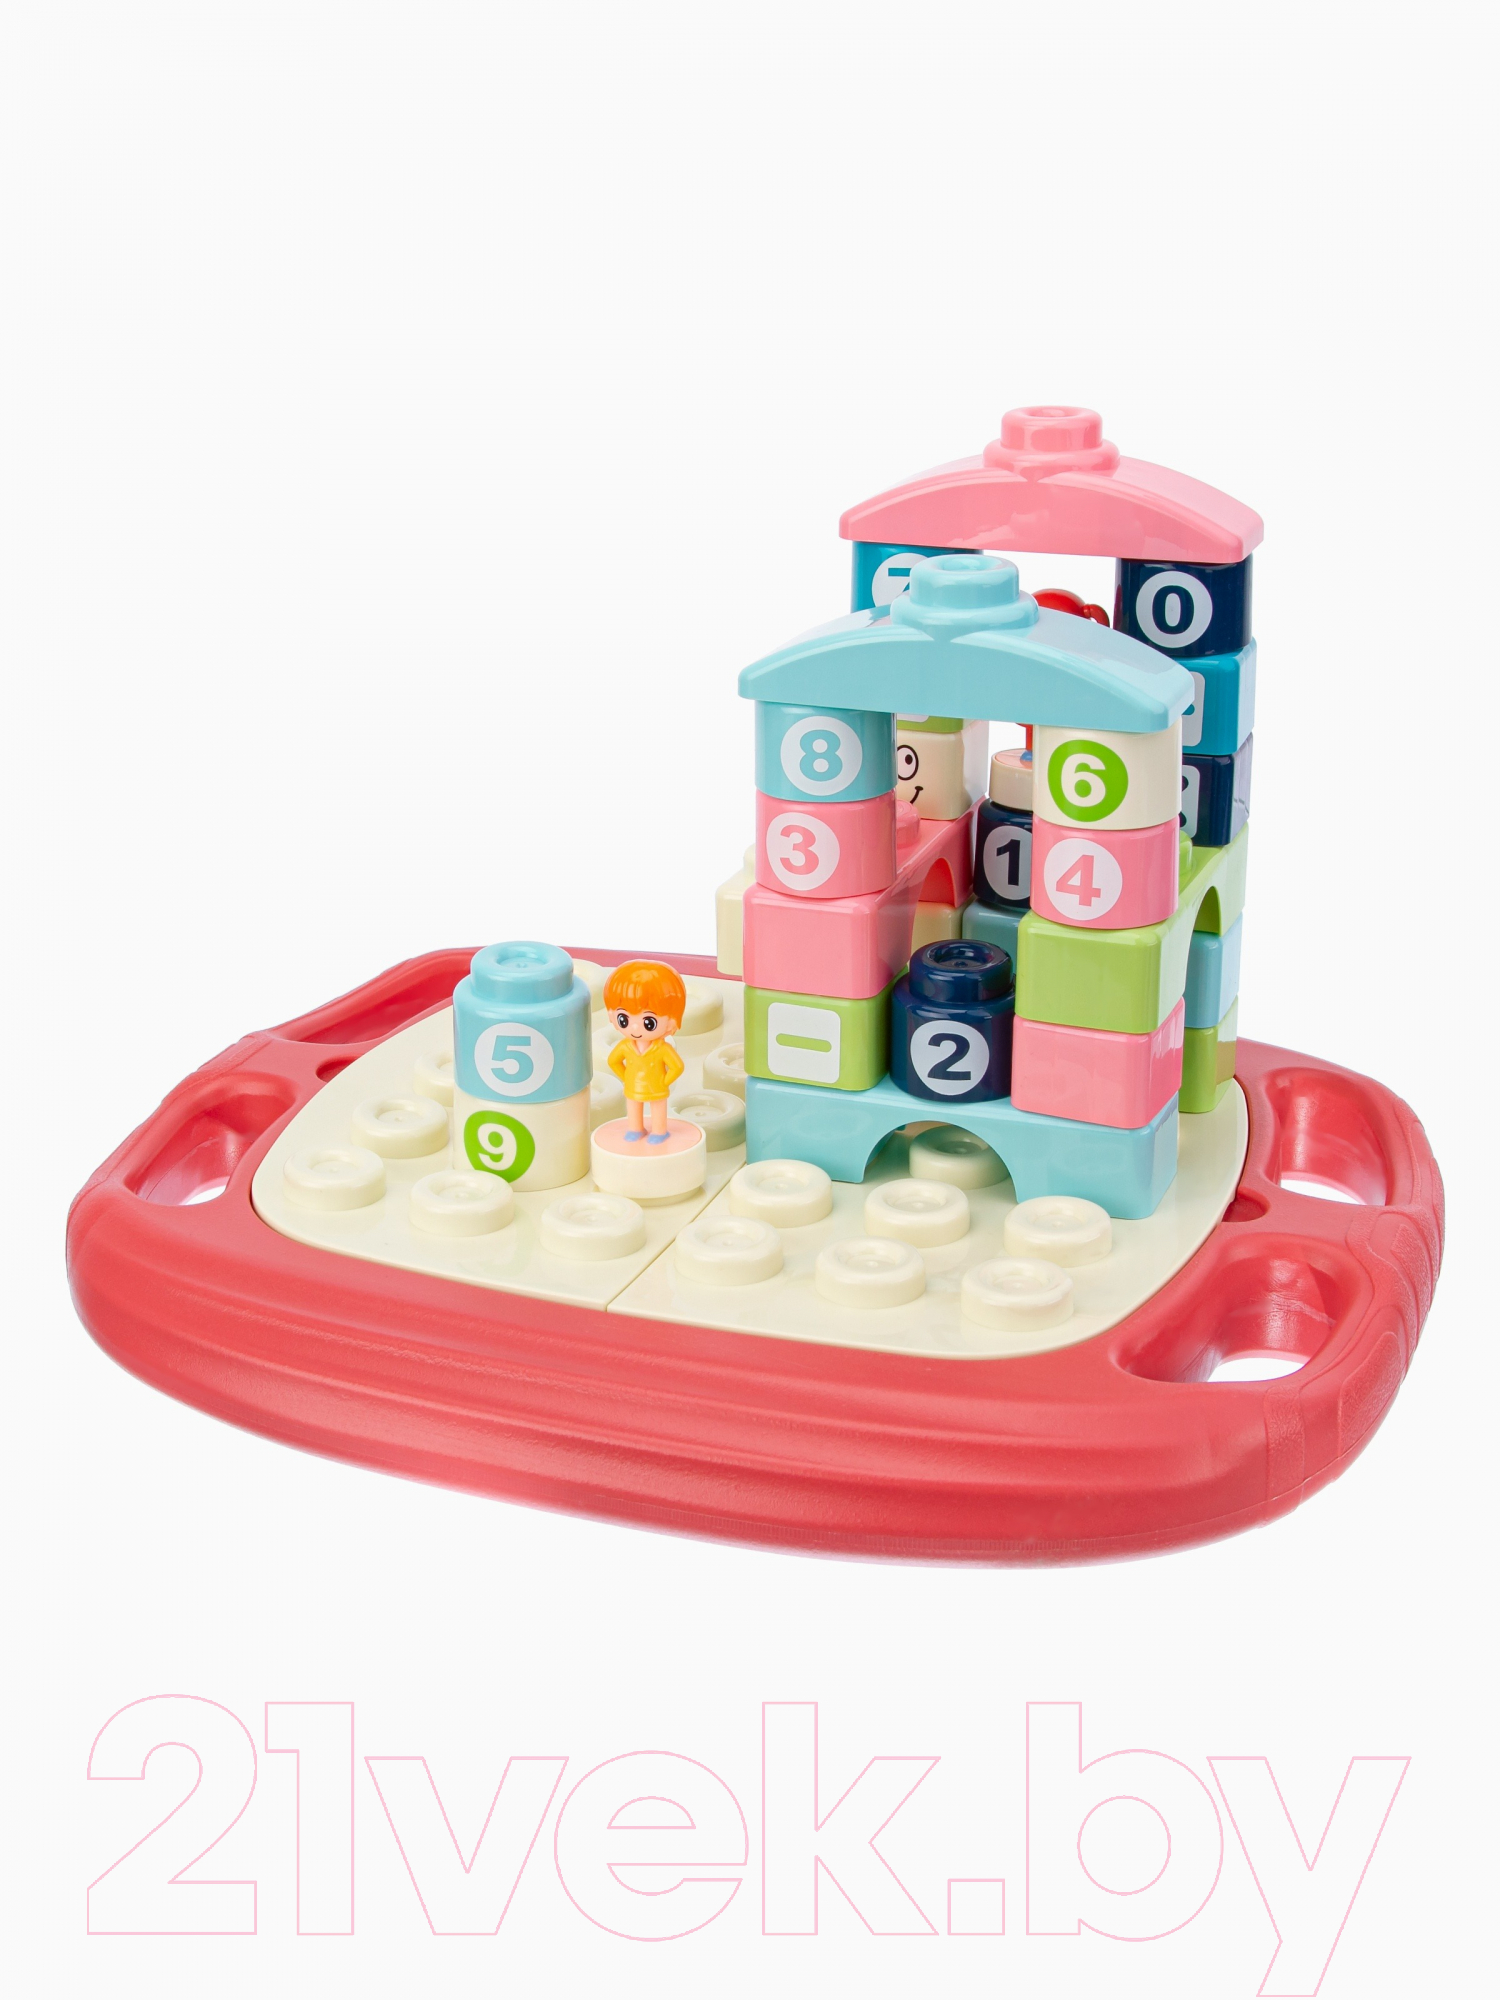 Набор игрушек для ванной Elefantino Веселые приключения / IT107273